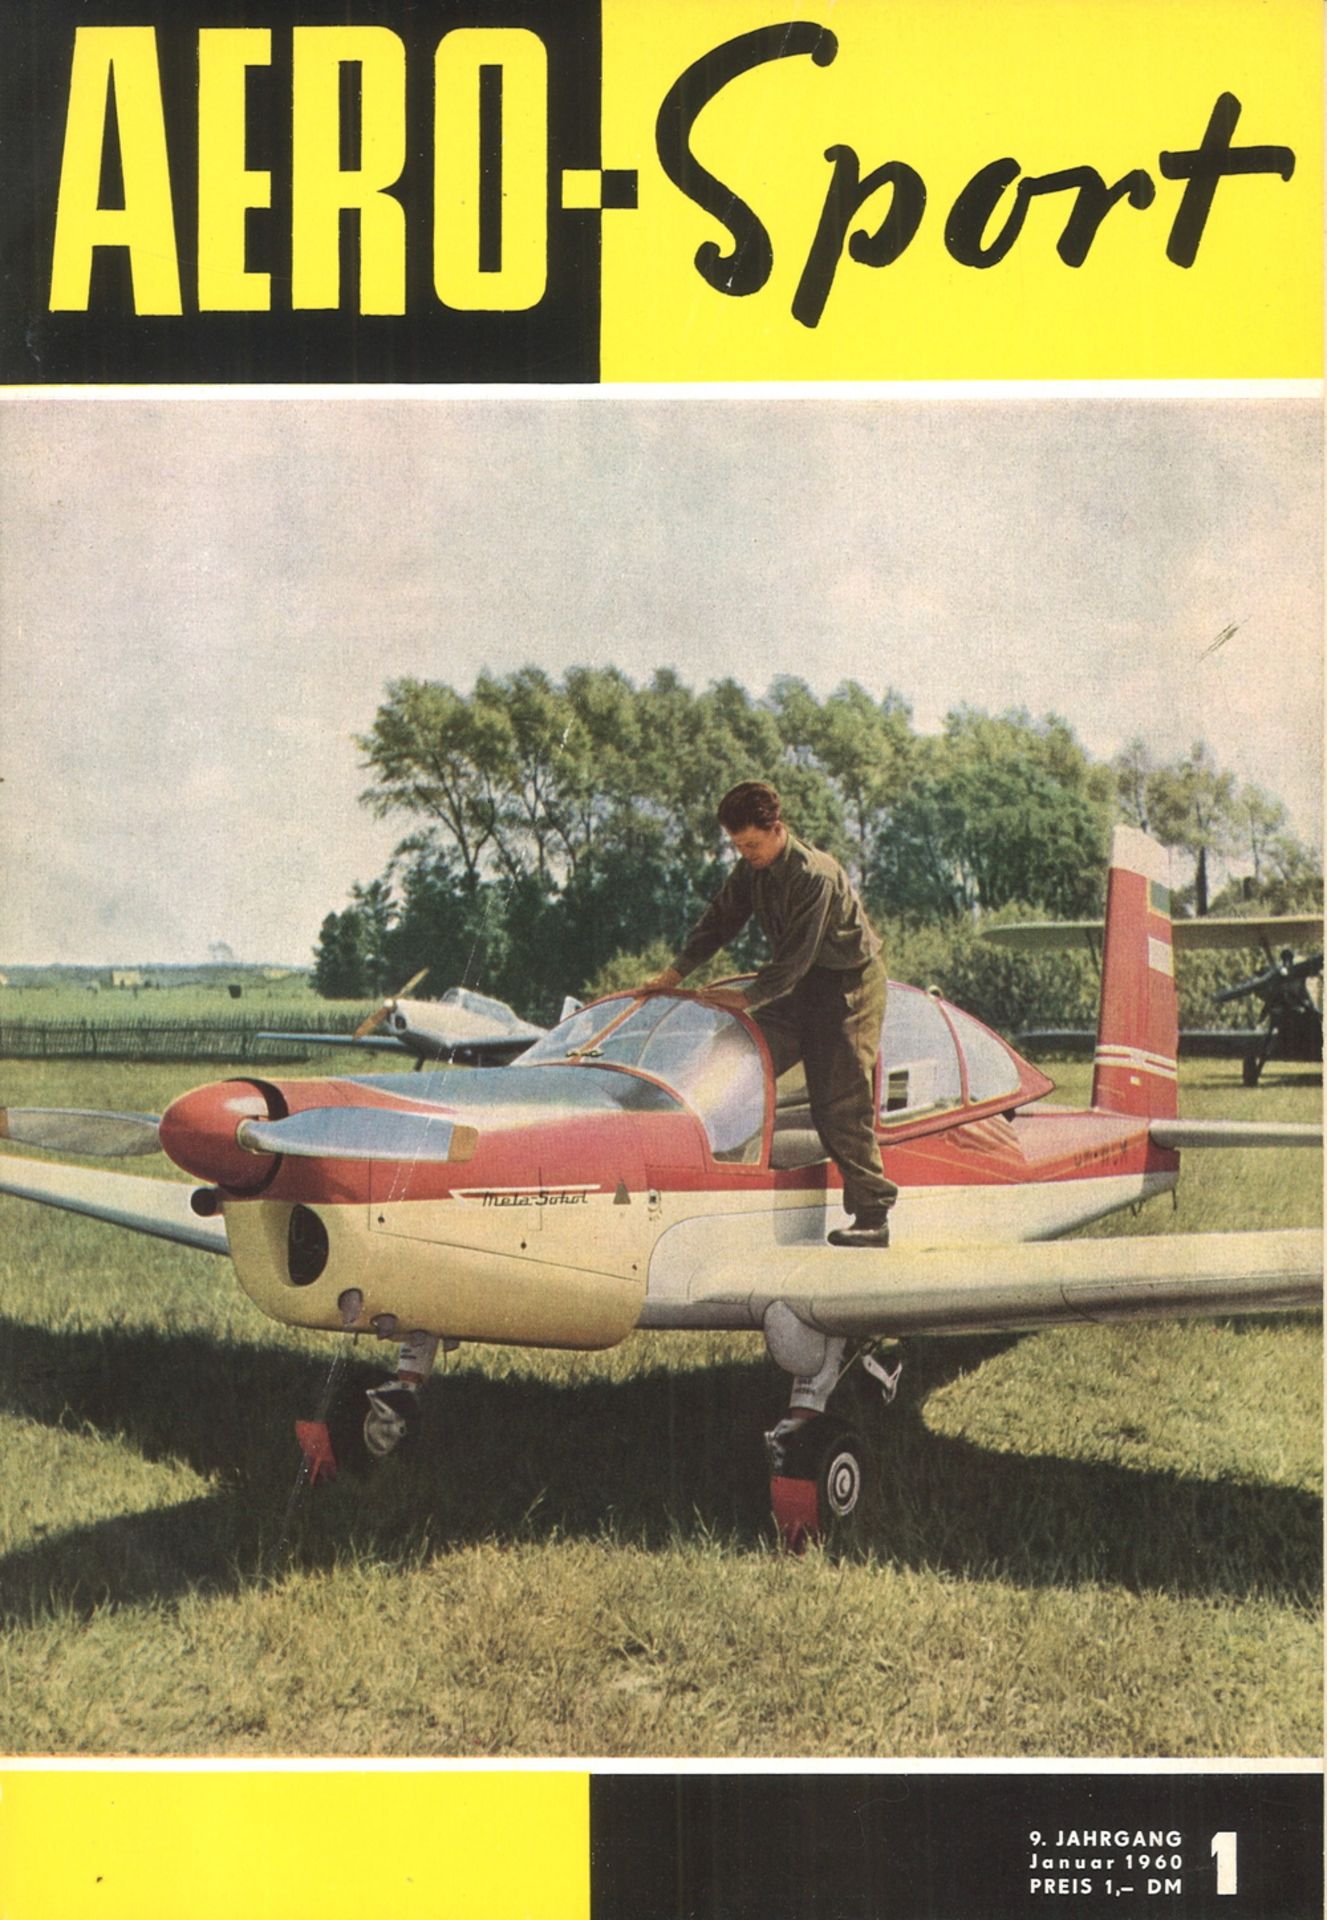 Zeitschrift "Aero Sport" Luftfahrt Monats-Zeitschrift der DDR. Gebundener Jahrgang 1960, guter